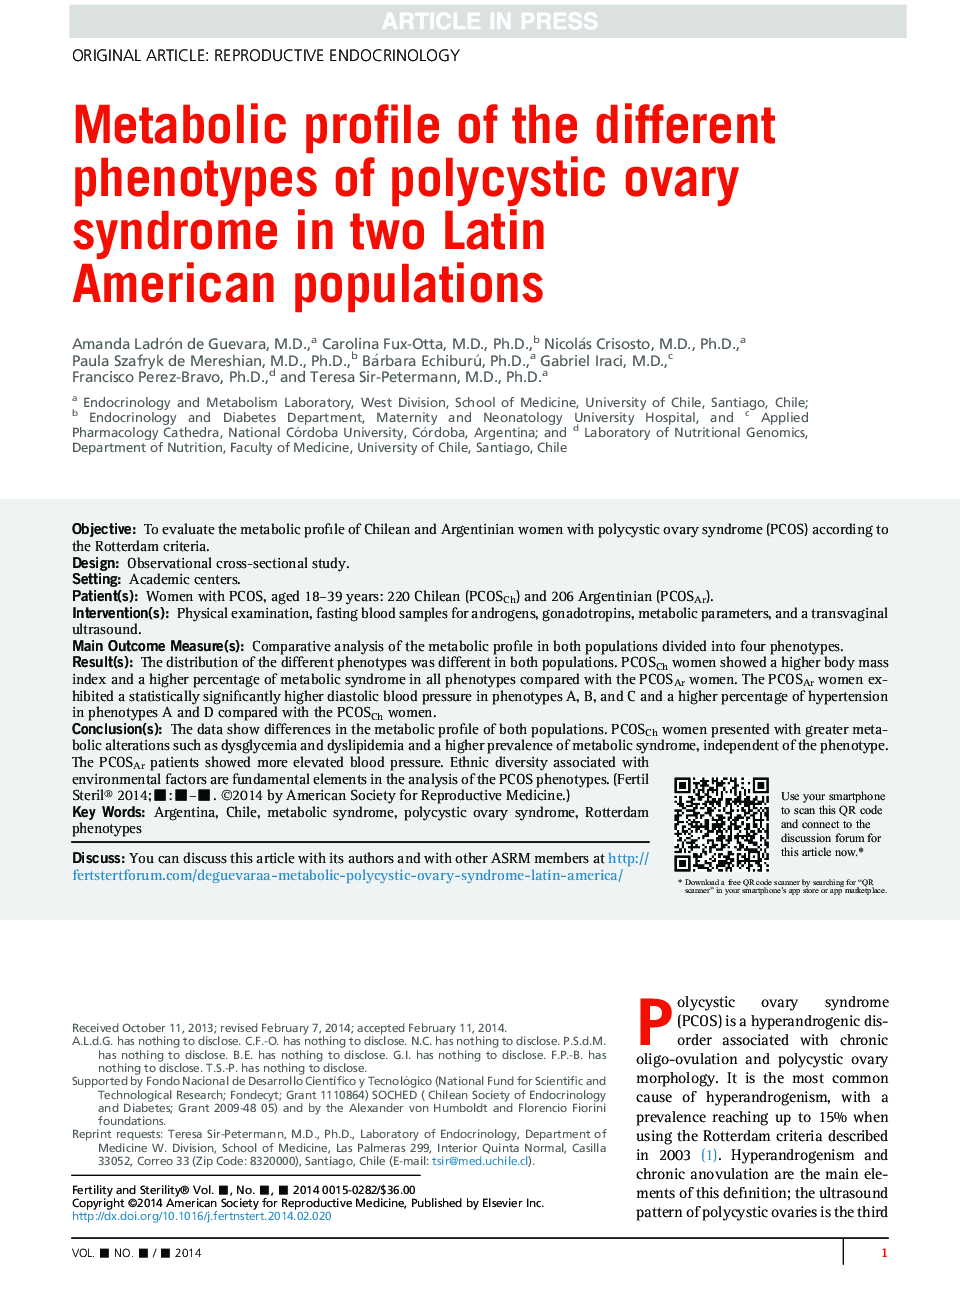 مشخصات متابولیک فنوتیپ های مختلف سندرم تخمدان پلی کیستیک در دو جمعیت آمریکای لاتین 